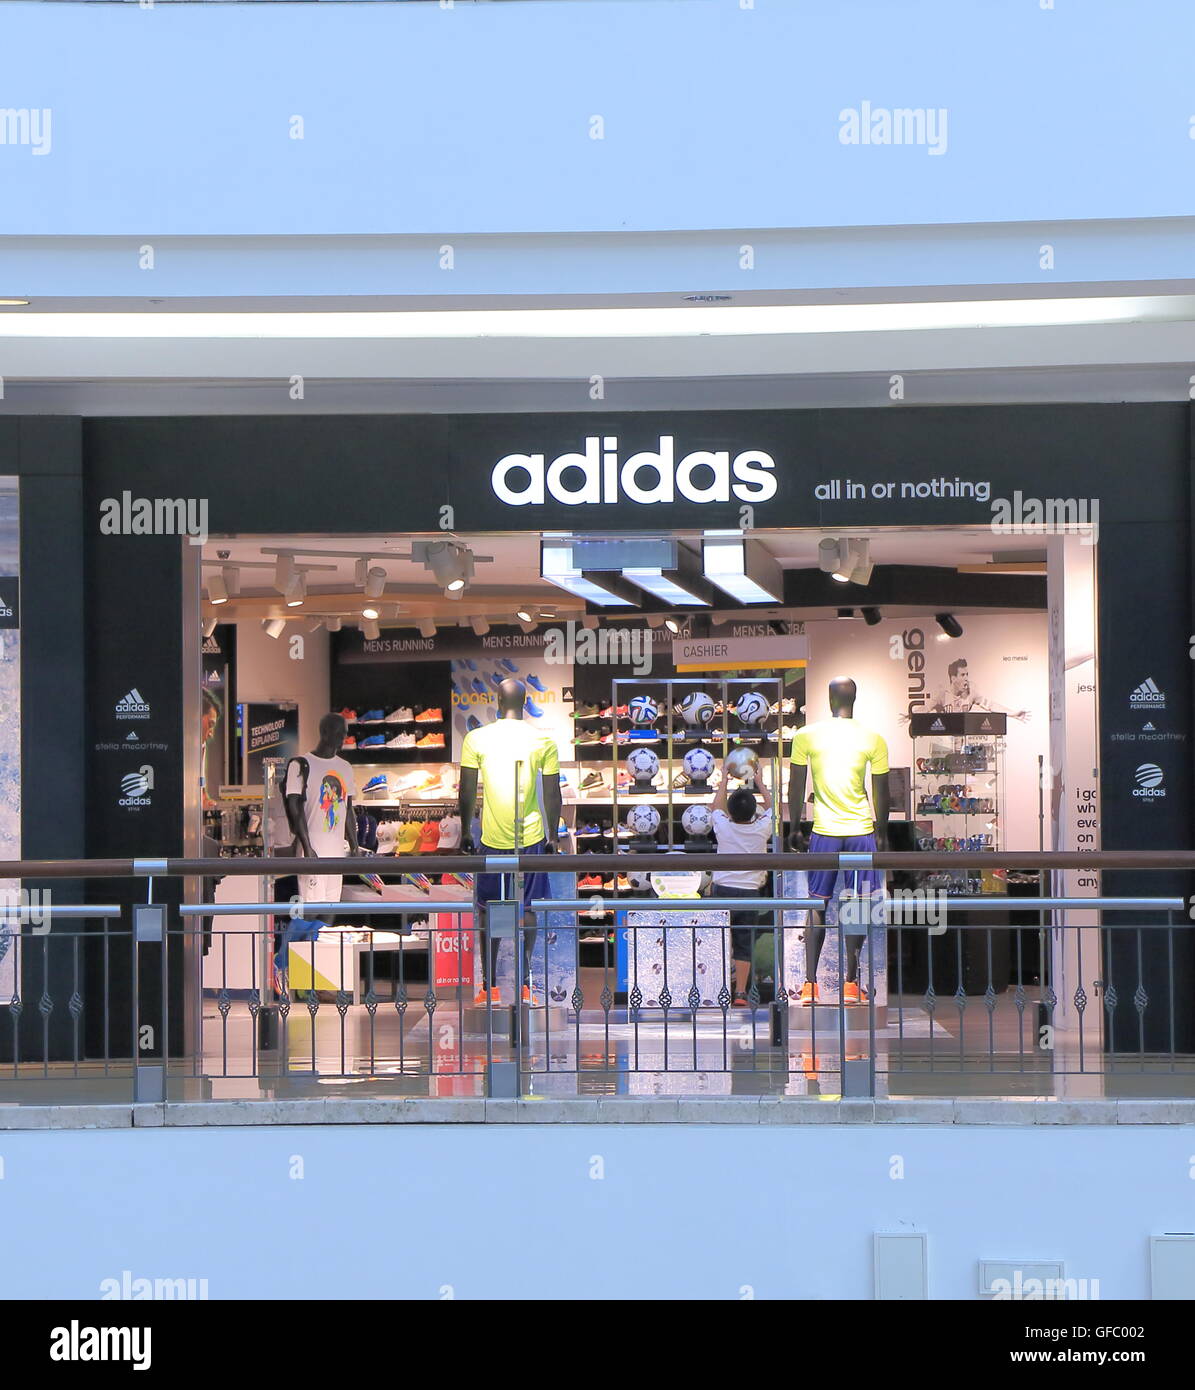 Adidas shop immagini e fotografie stock ad alta risoluzione - Alamy